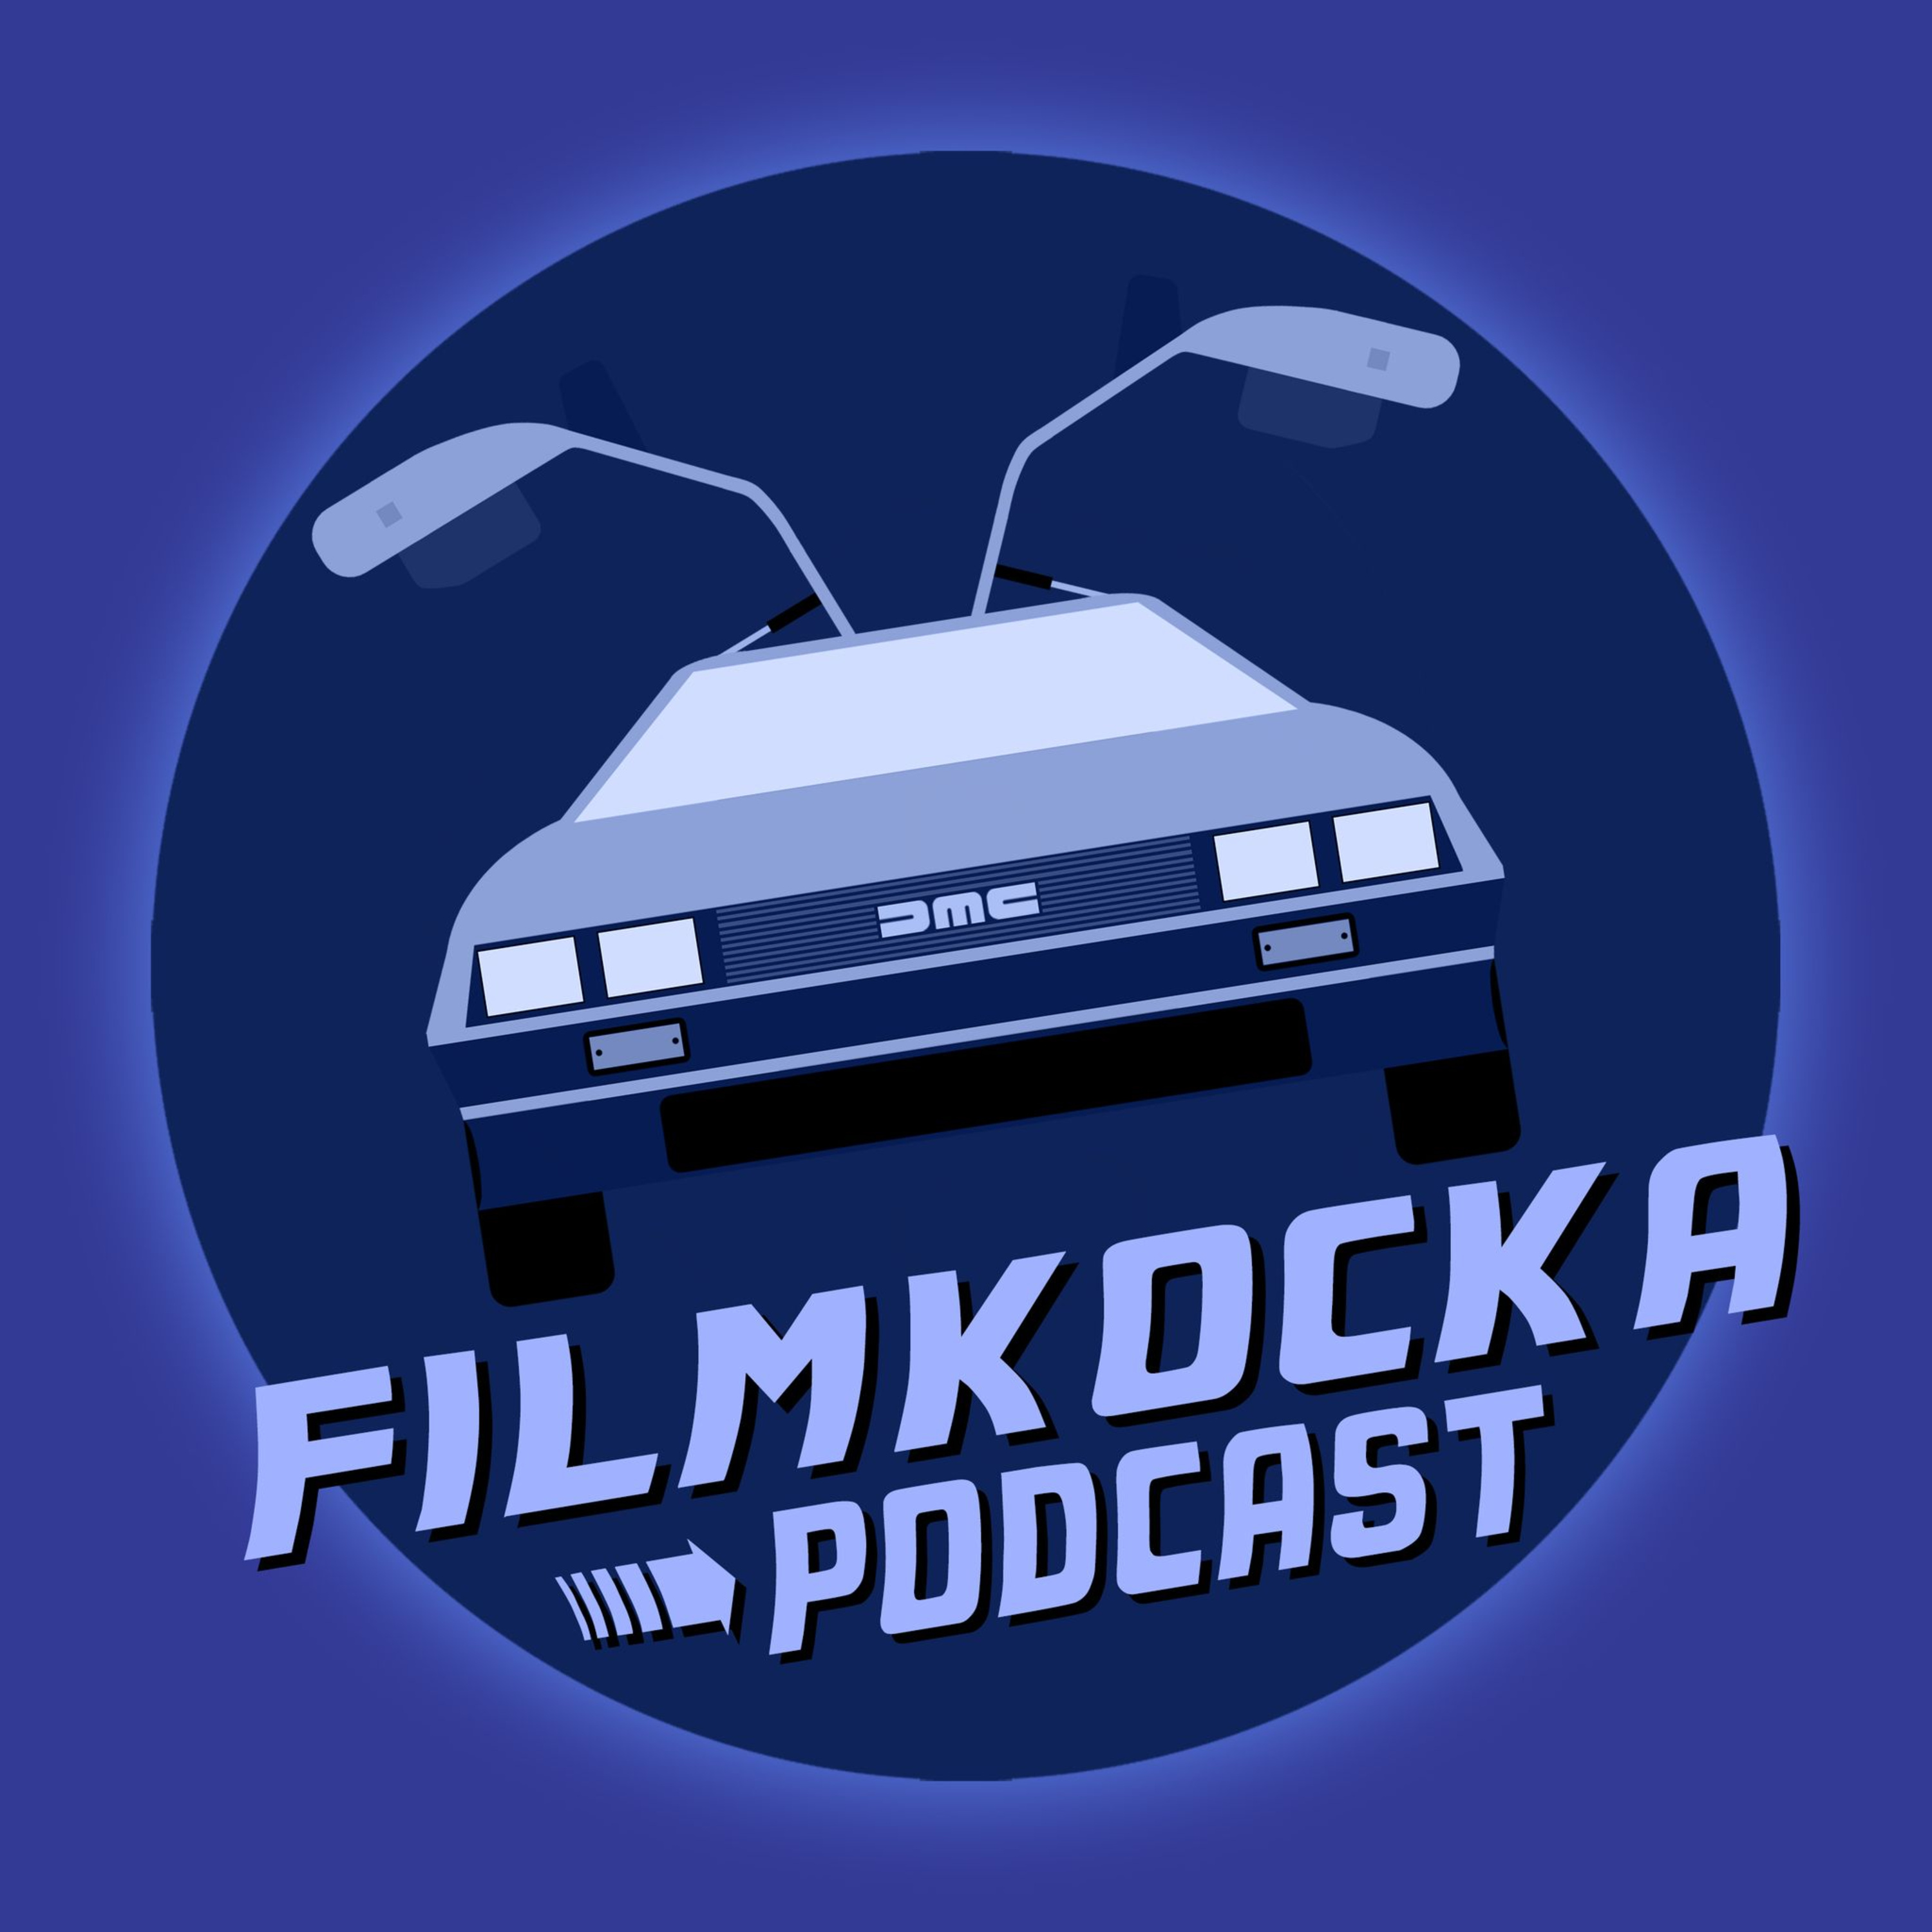 Filmkocka podcast #22: Kedvenc filmes autóink